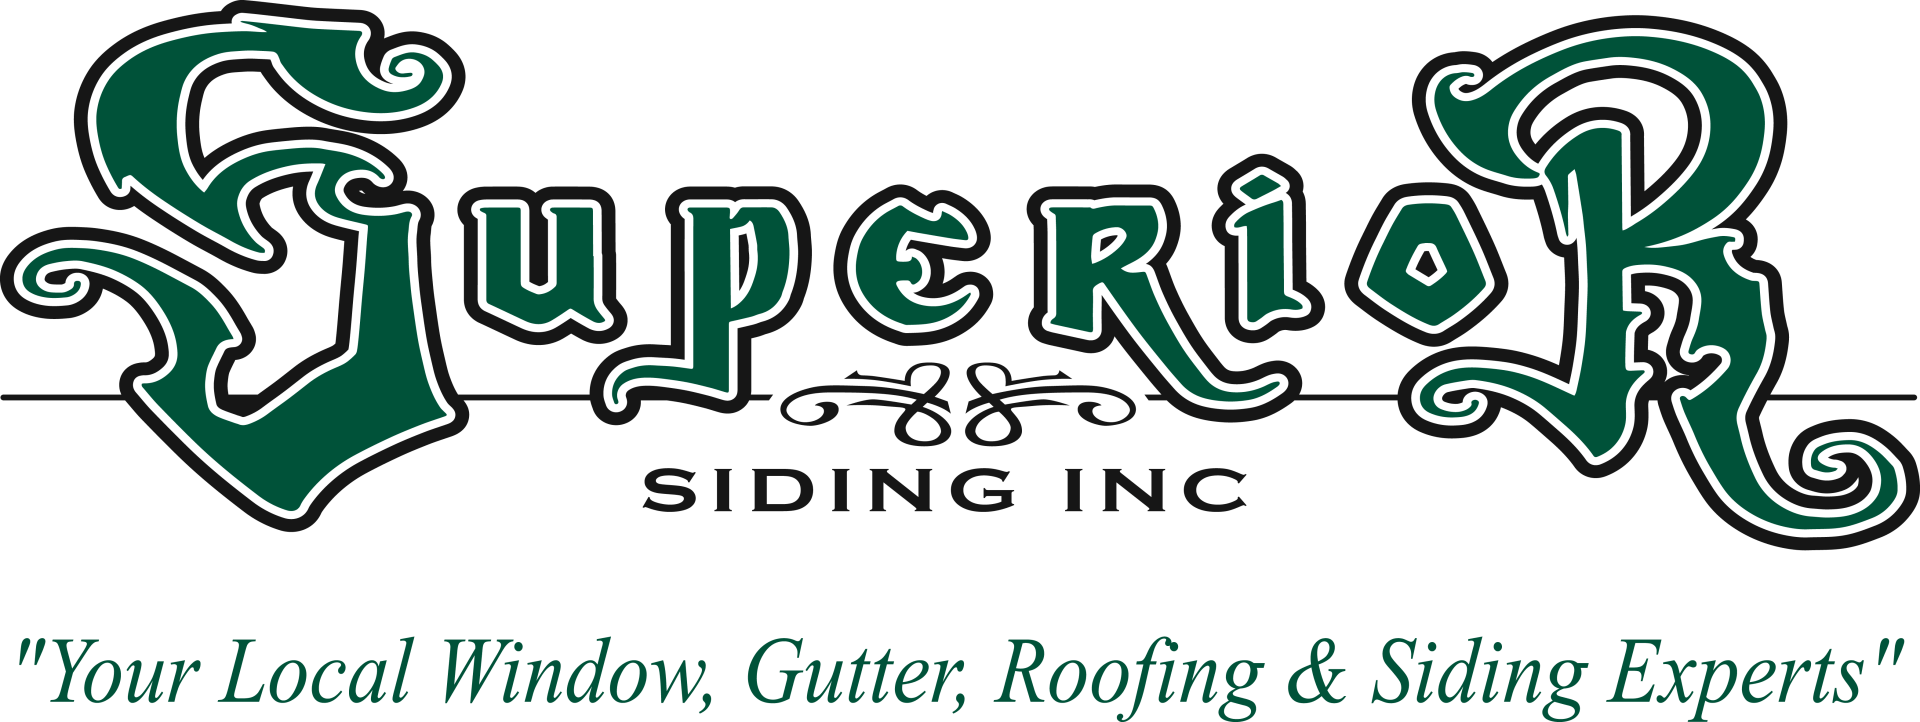 Superior Siding Inc. - logo